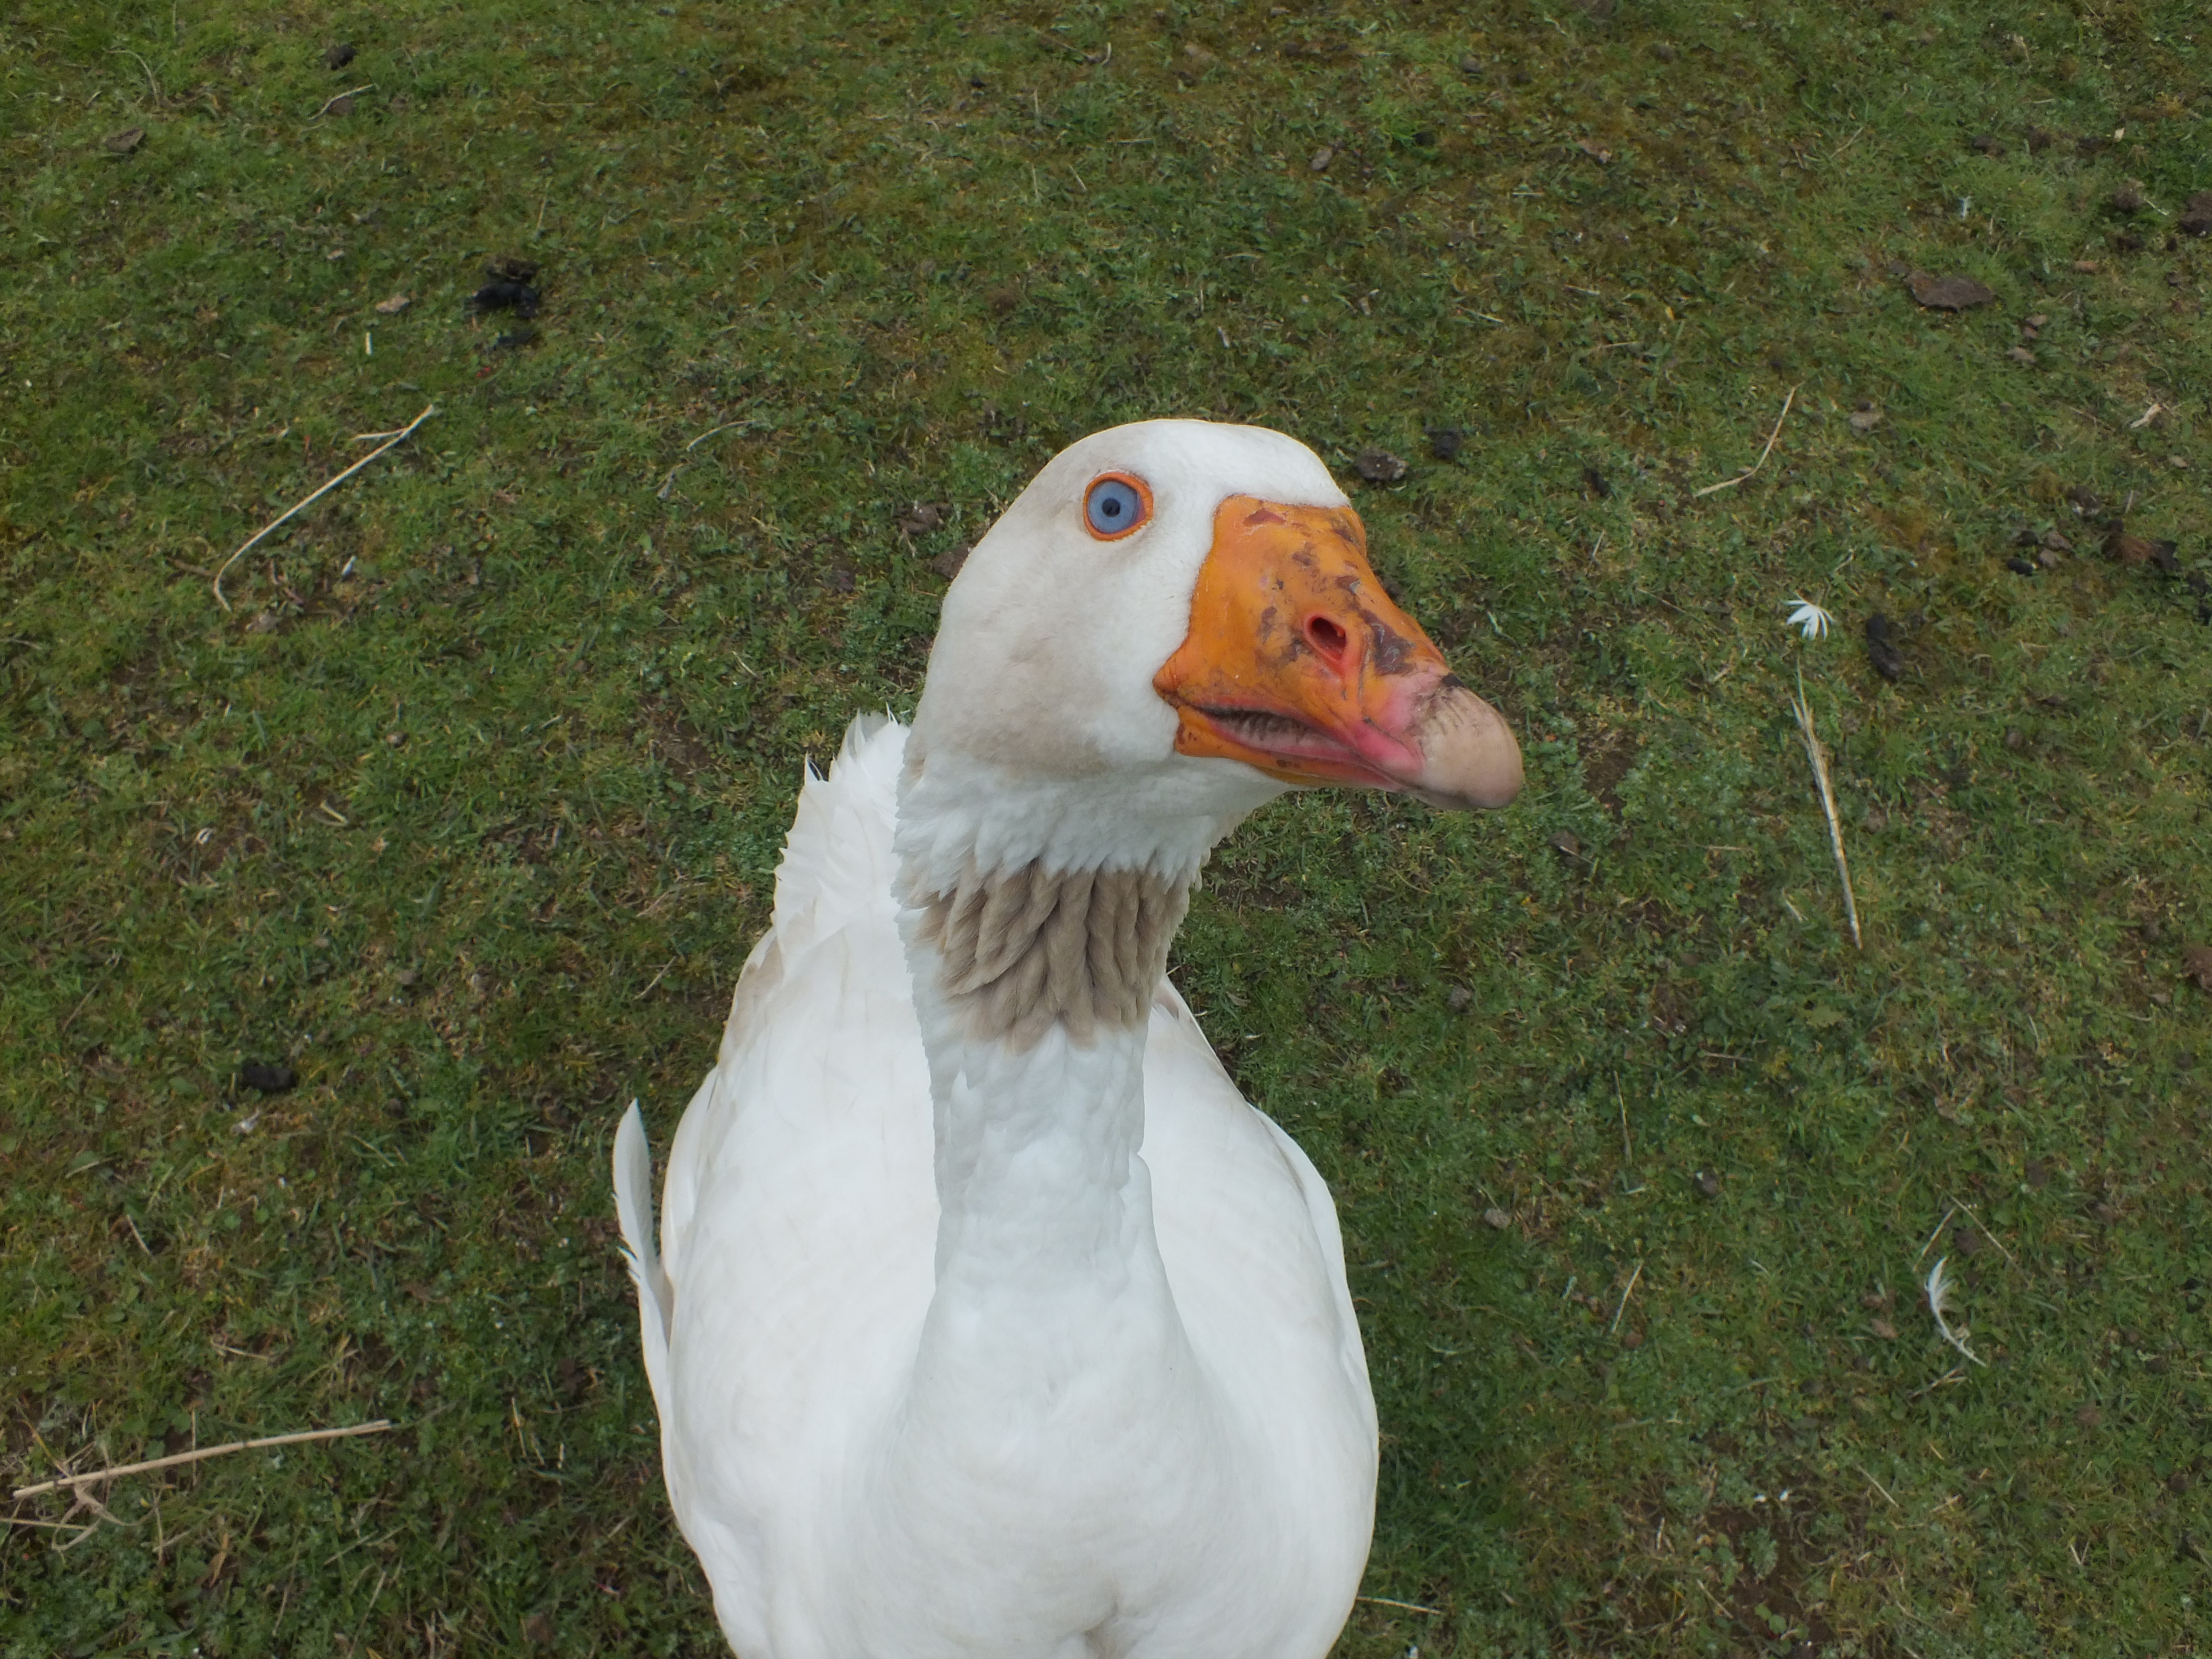 Goose photo